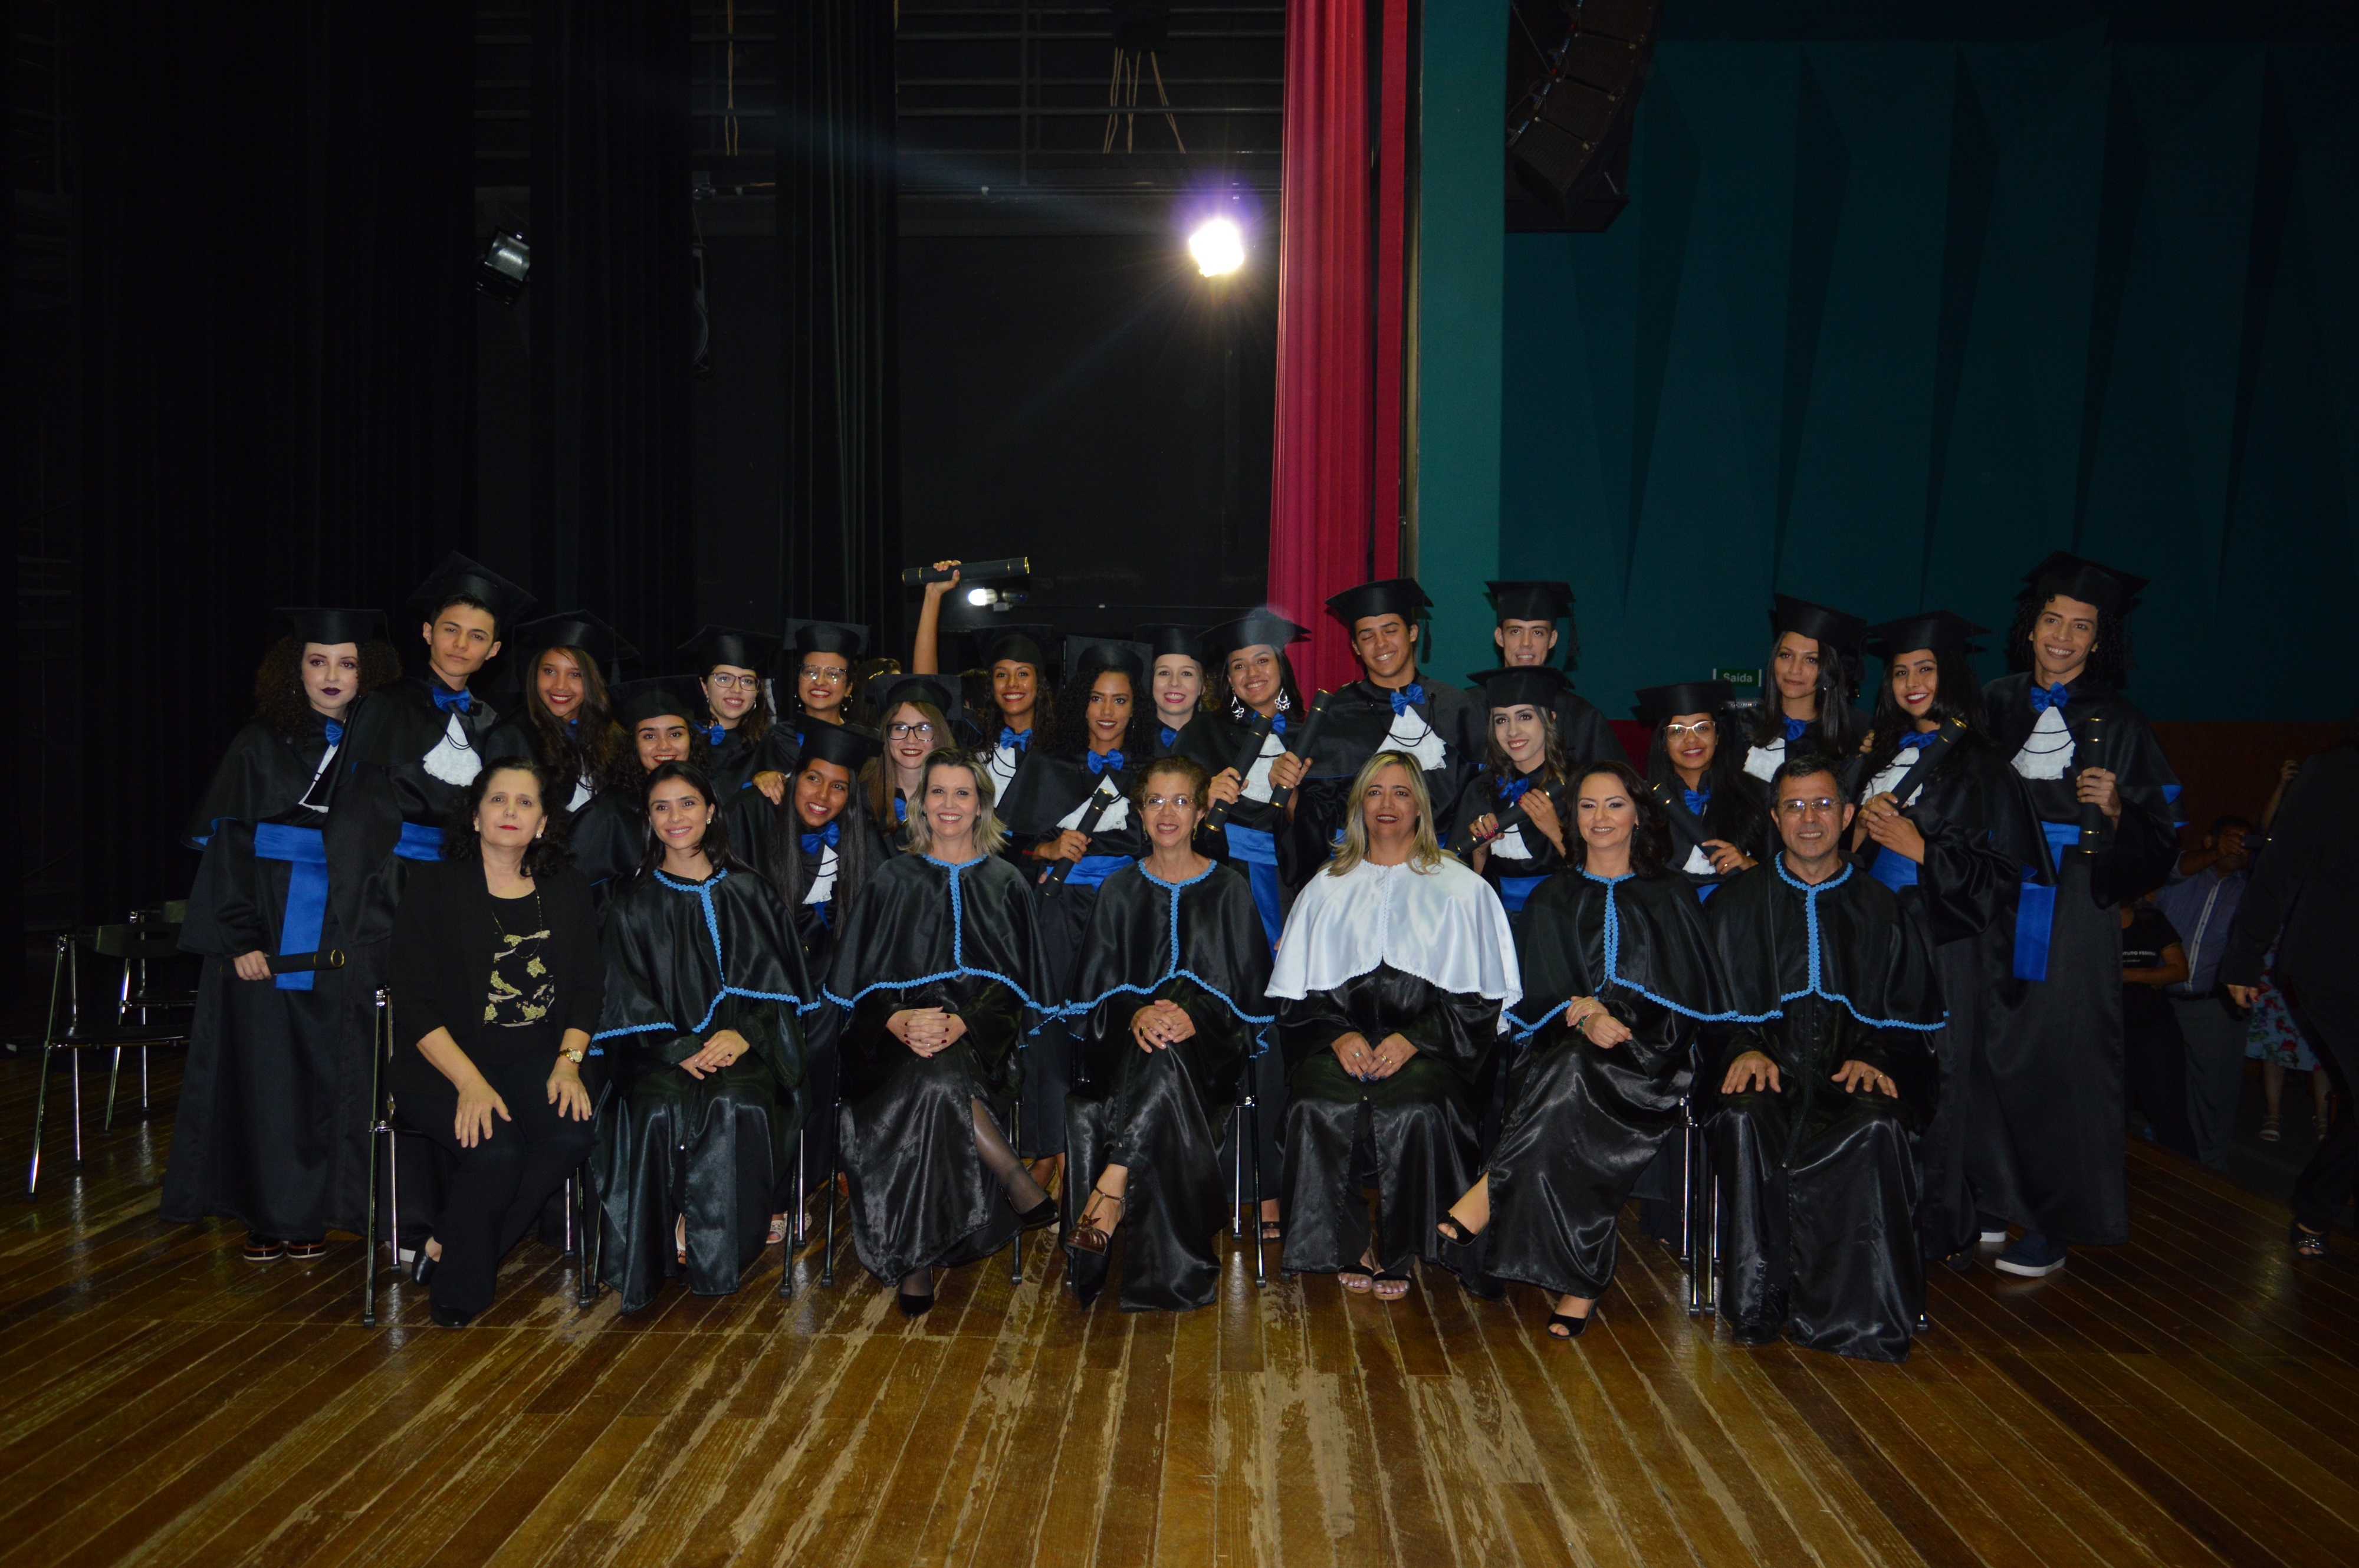 Solenidades de certificação de concluintes dos cursos técnicos do IFG - Câmpus Goiânia foram realizadas no Teatro do IFG, nos dias 11 e 14 de maio, à noite.